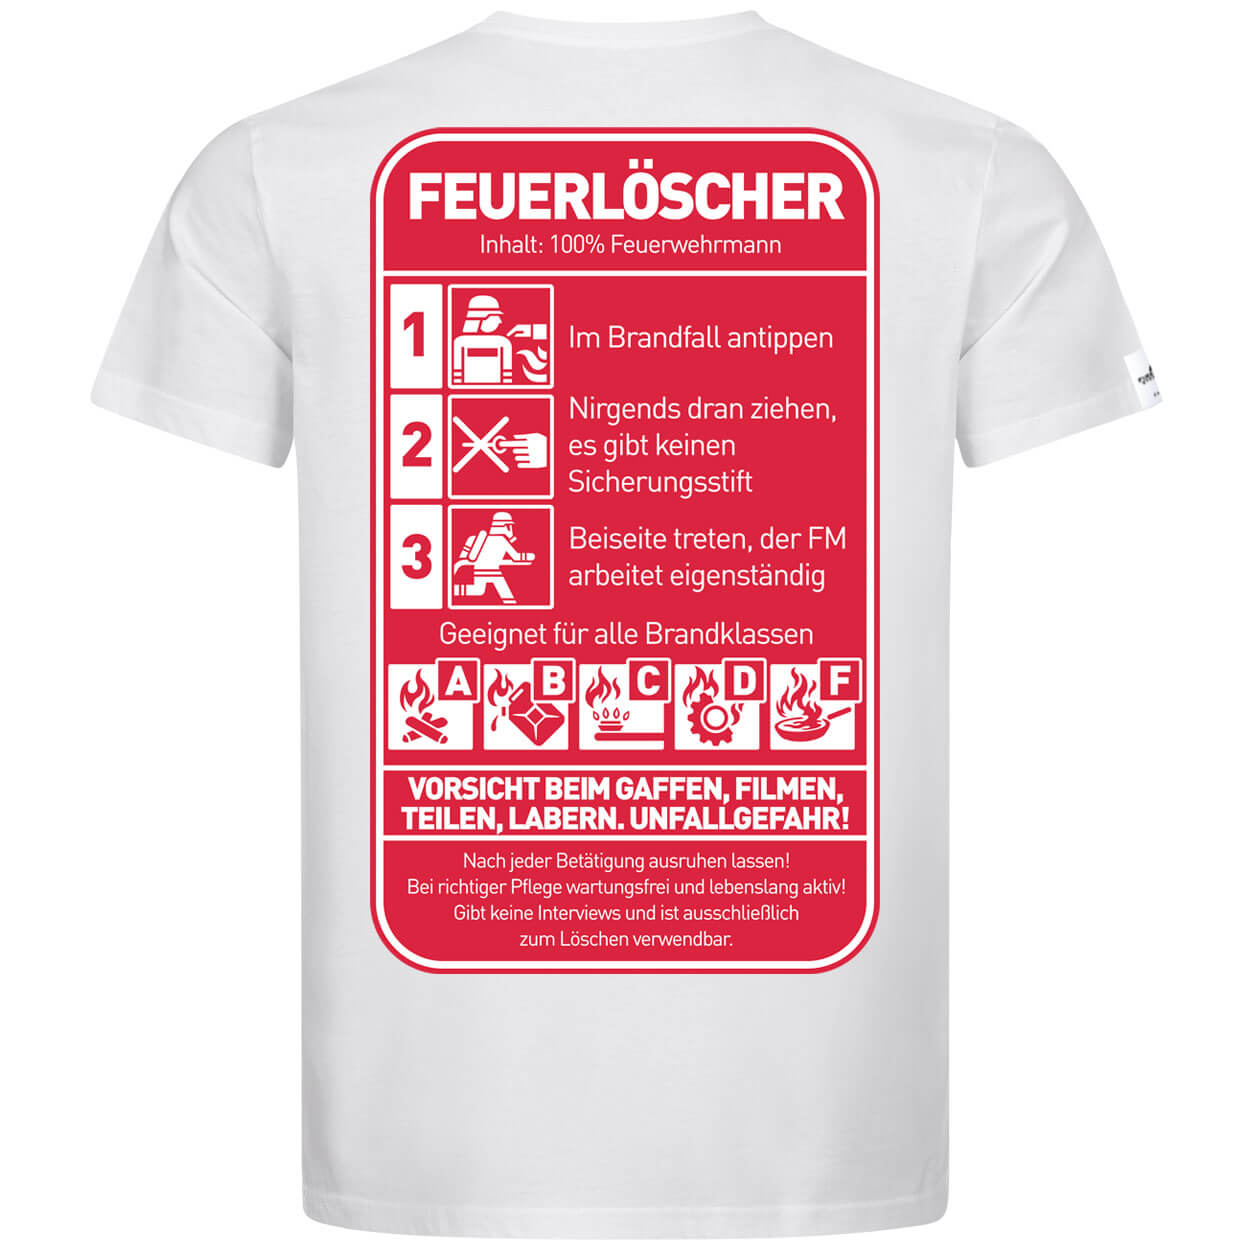 Feuerlöscher - Inhalt 100% Feuerwehrmann T-Shirt